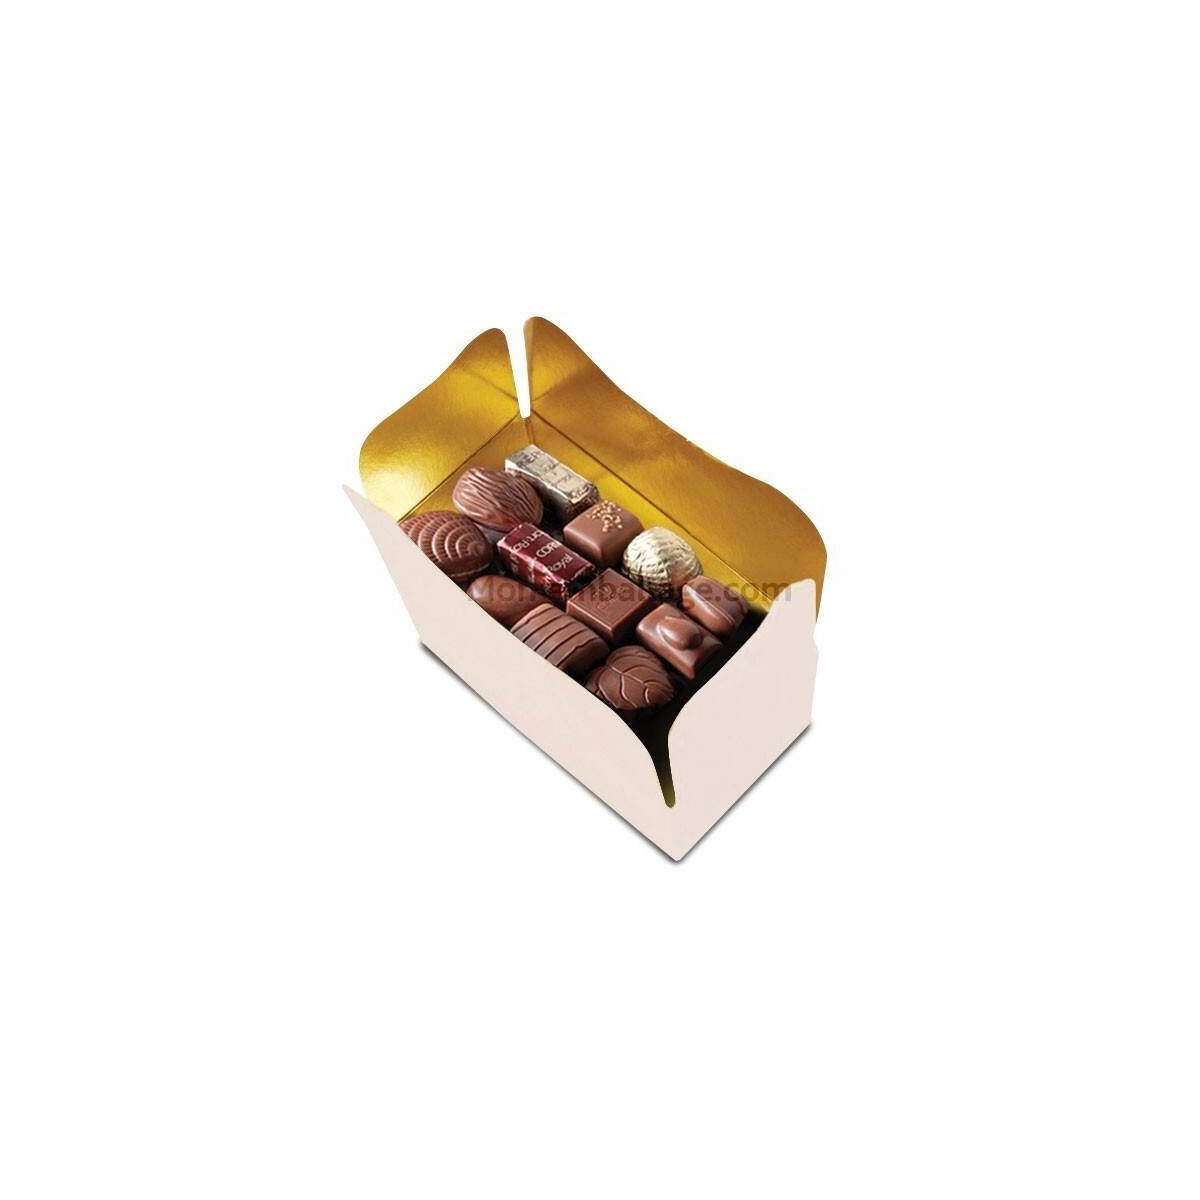 Chocolats La Petite Fabrique Française - Ballotin de 250 g